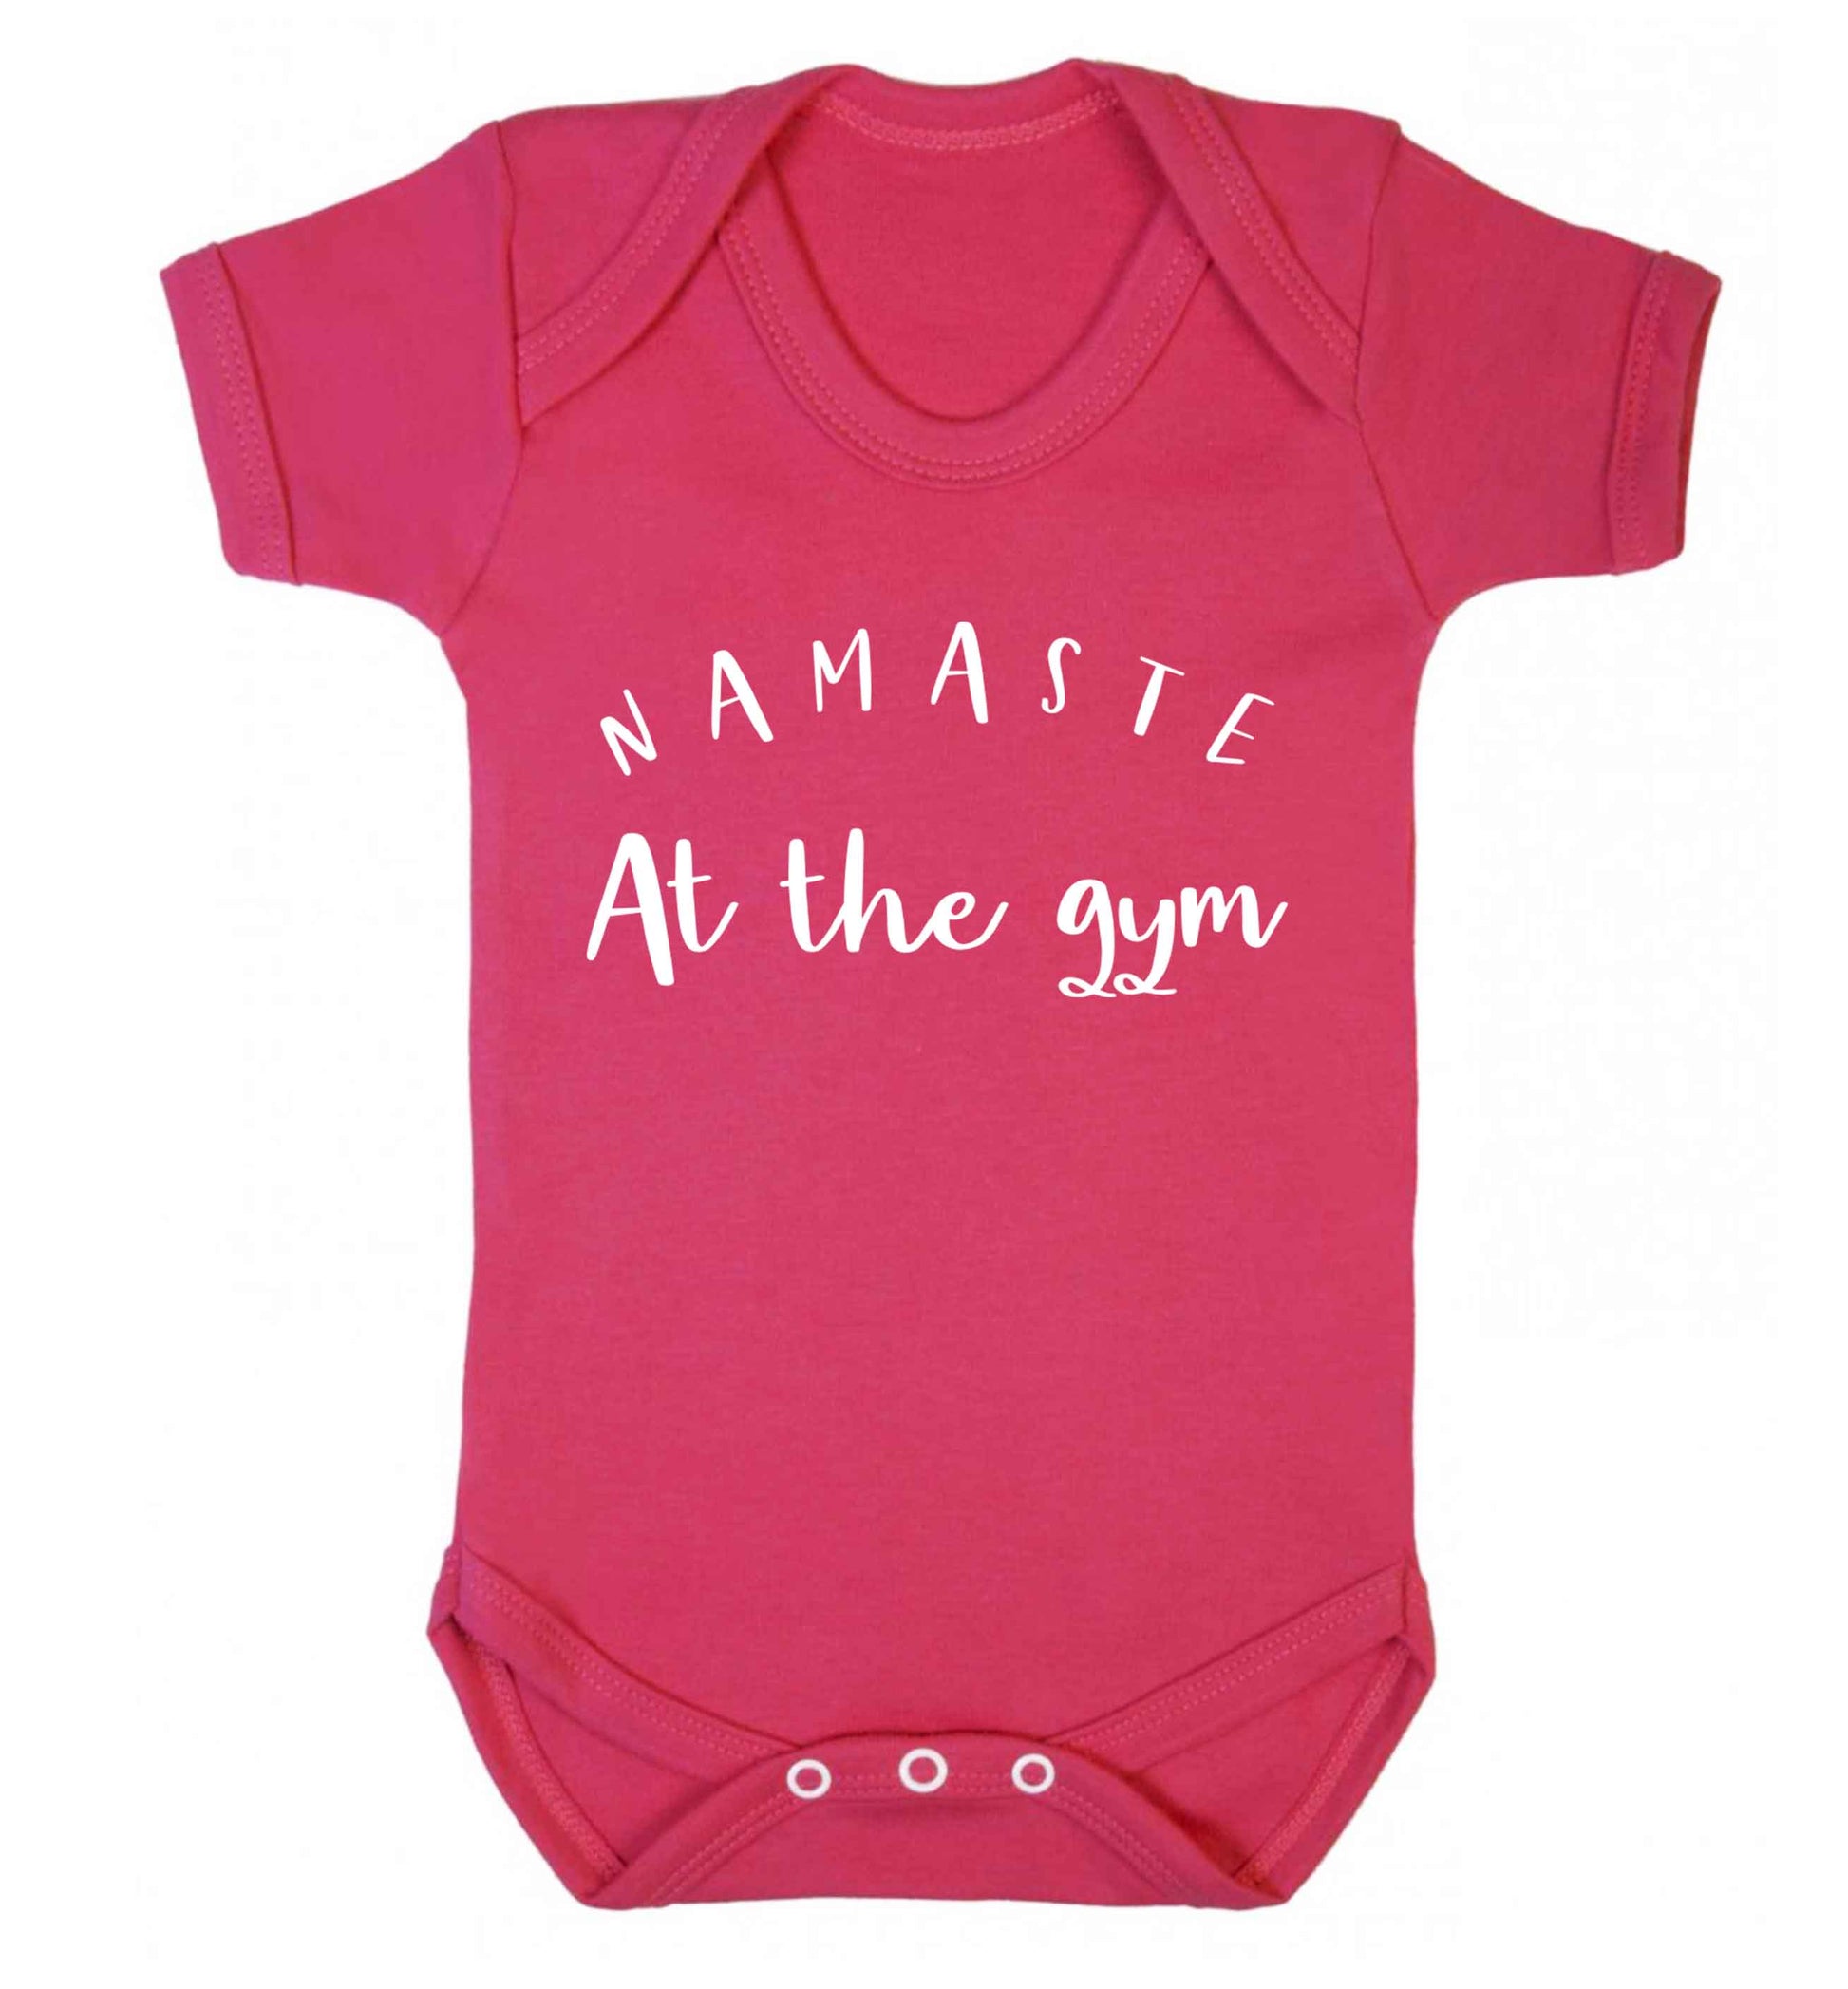 Namaste at the gym Baby Vest dark pink 18-24 months